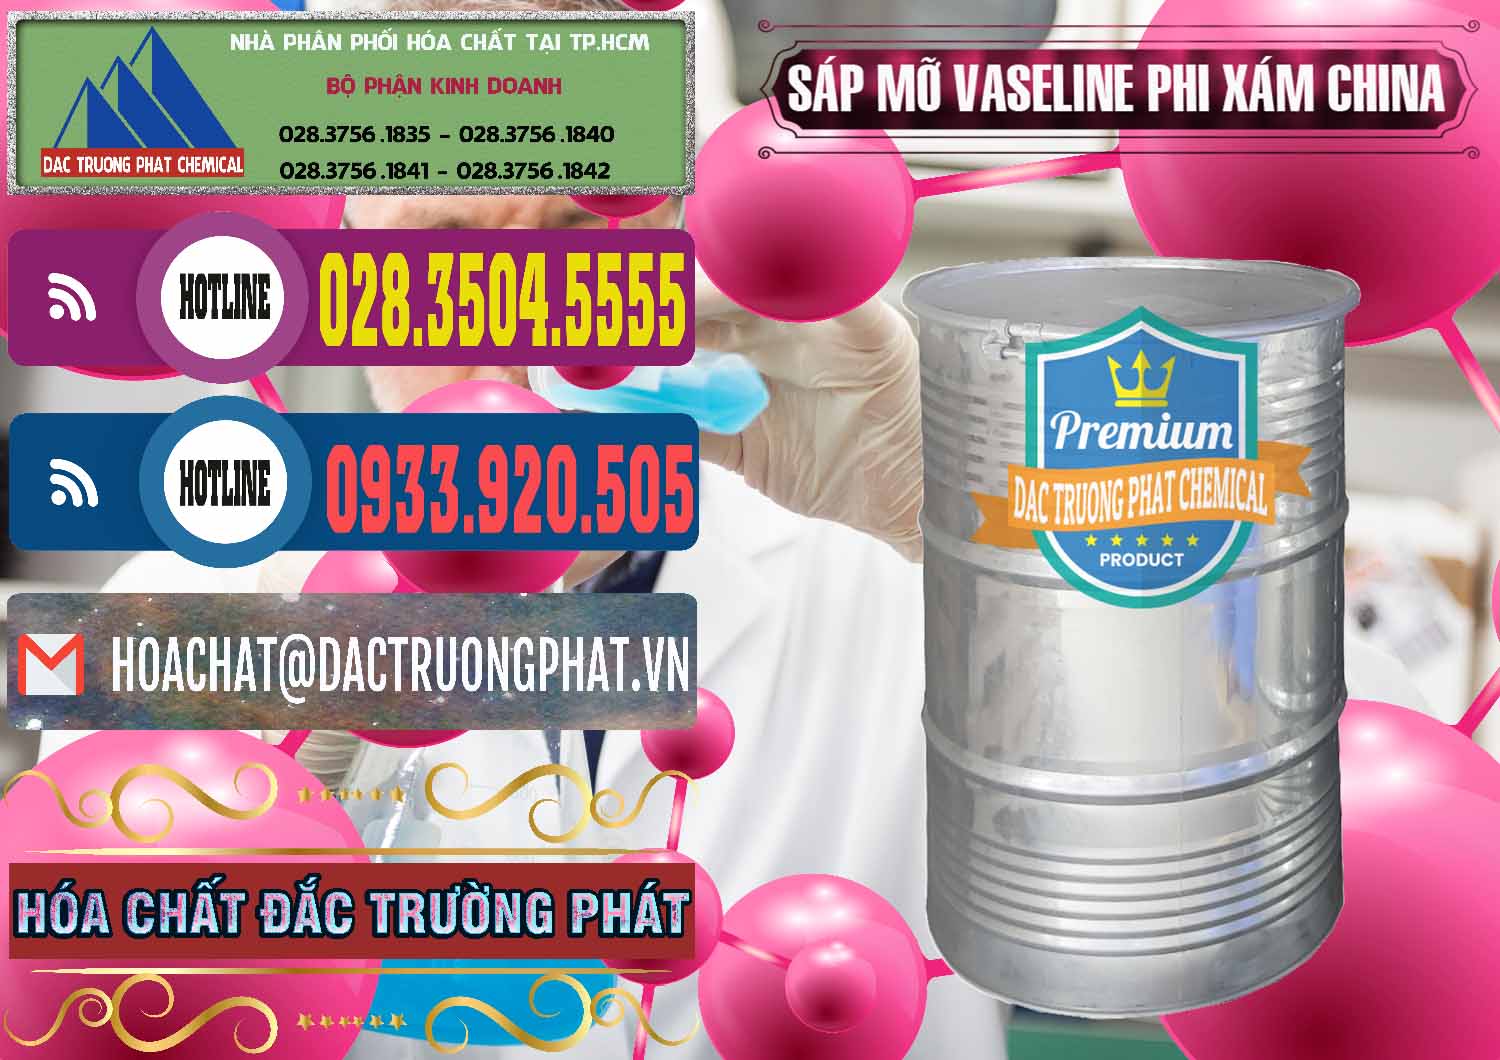 Nơi cung ứng & bán Sáp Mỡ Vaseline Phi Xám Trung Quốc China - 0291 - Nơi chuyên cung ứng & phân phối hóa chất tại TP.HCM - muabanhoachat.com.vn